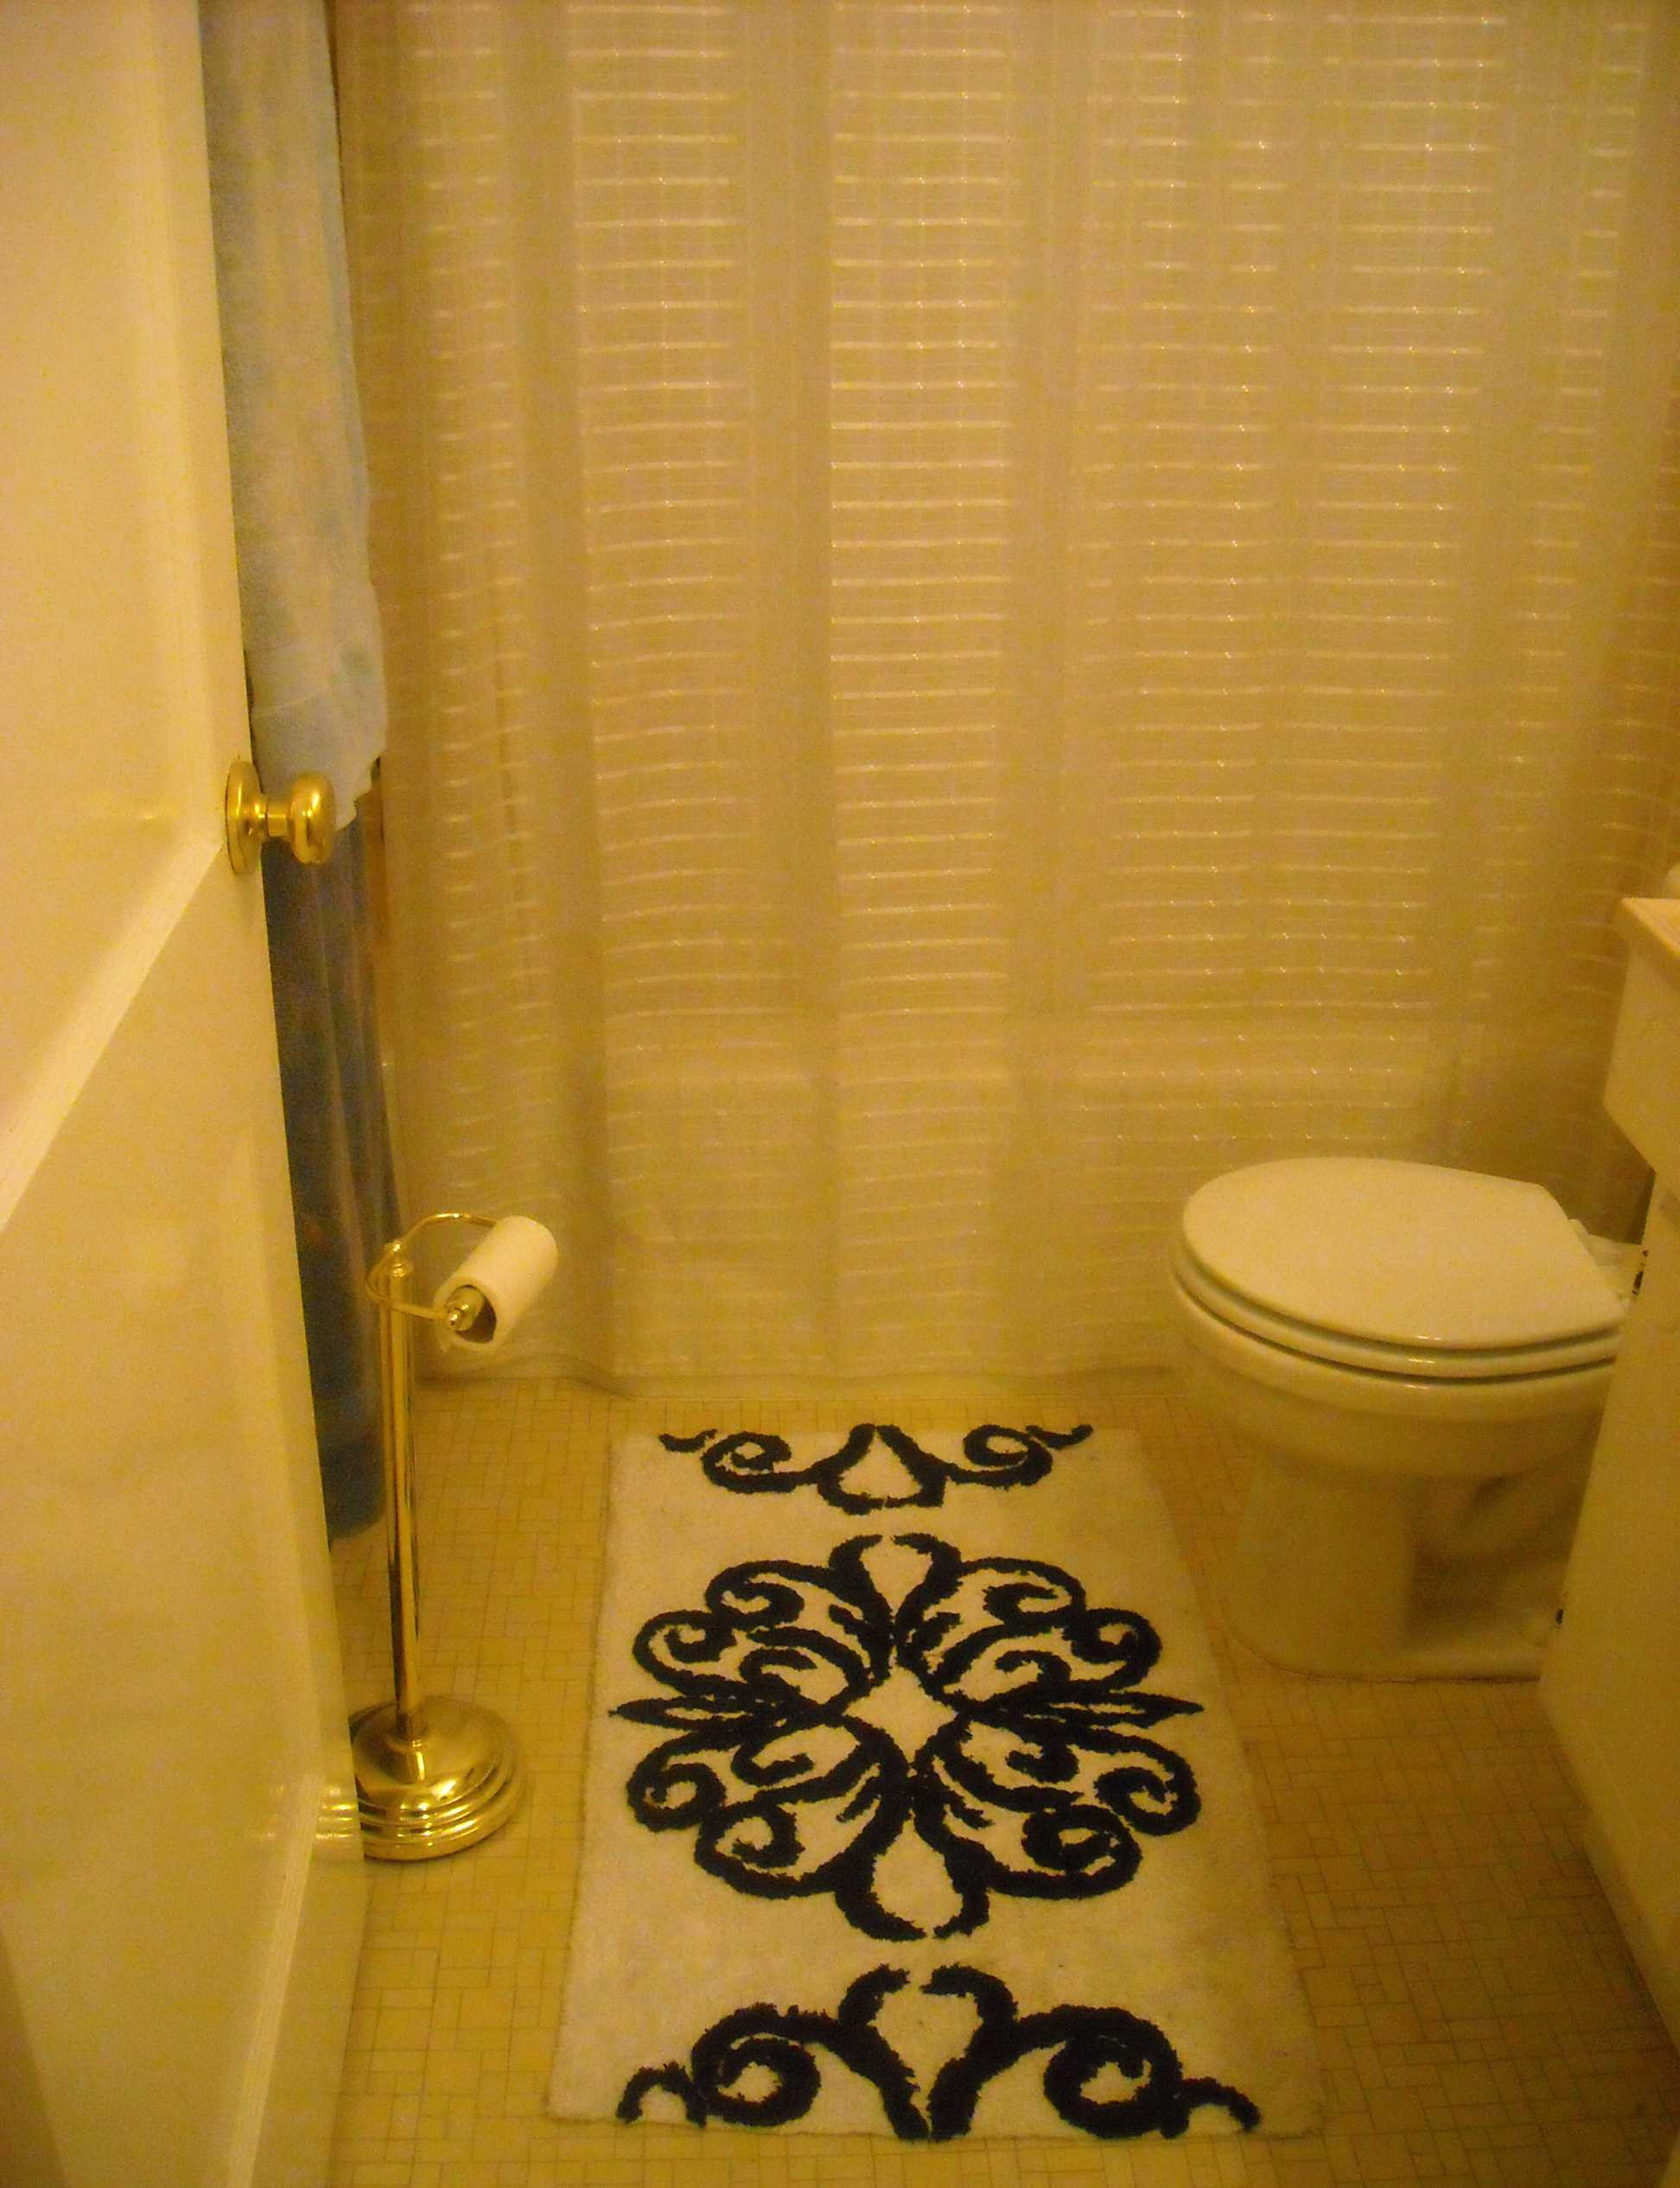 Target Bathroom Decor
 Bathroom Inspiring Bathroom Decor Ideas With Tar Bath